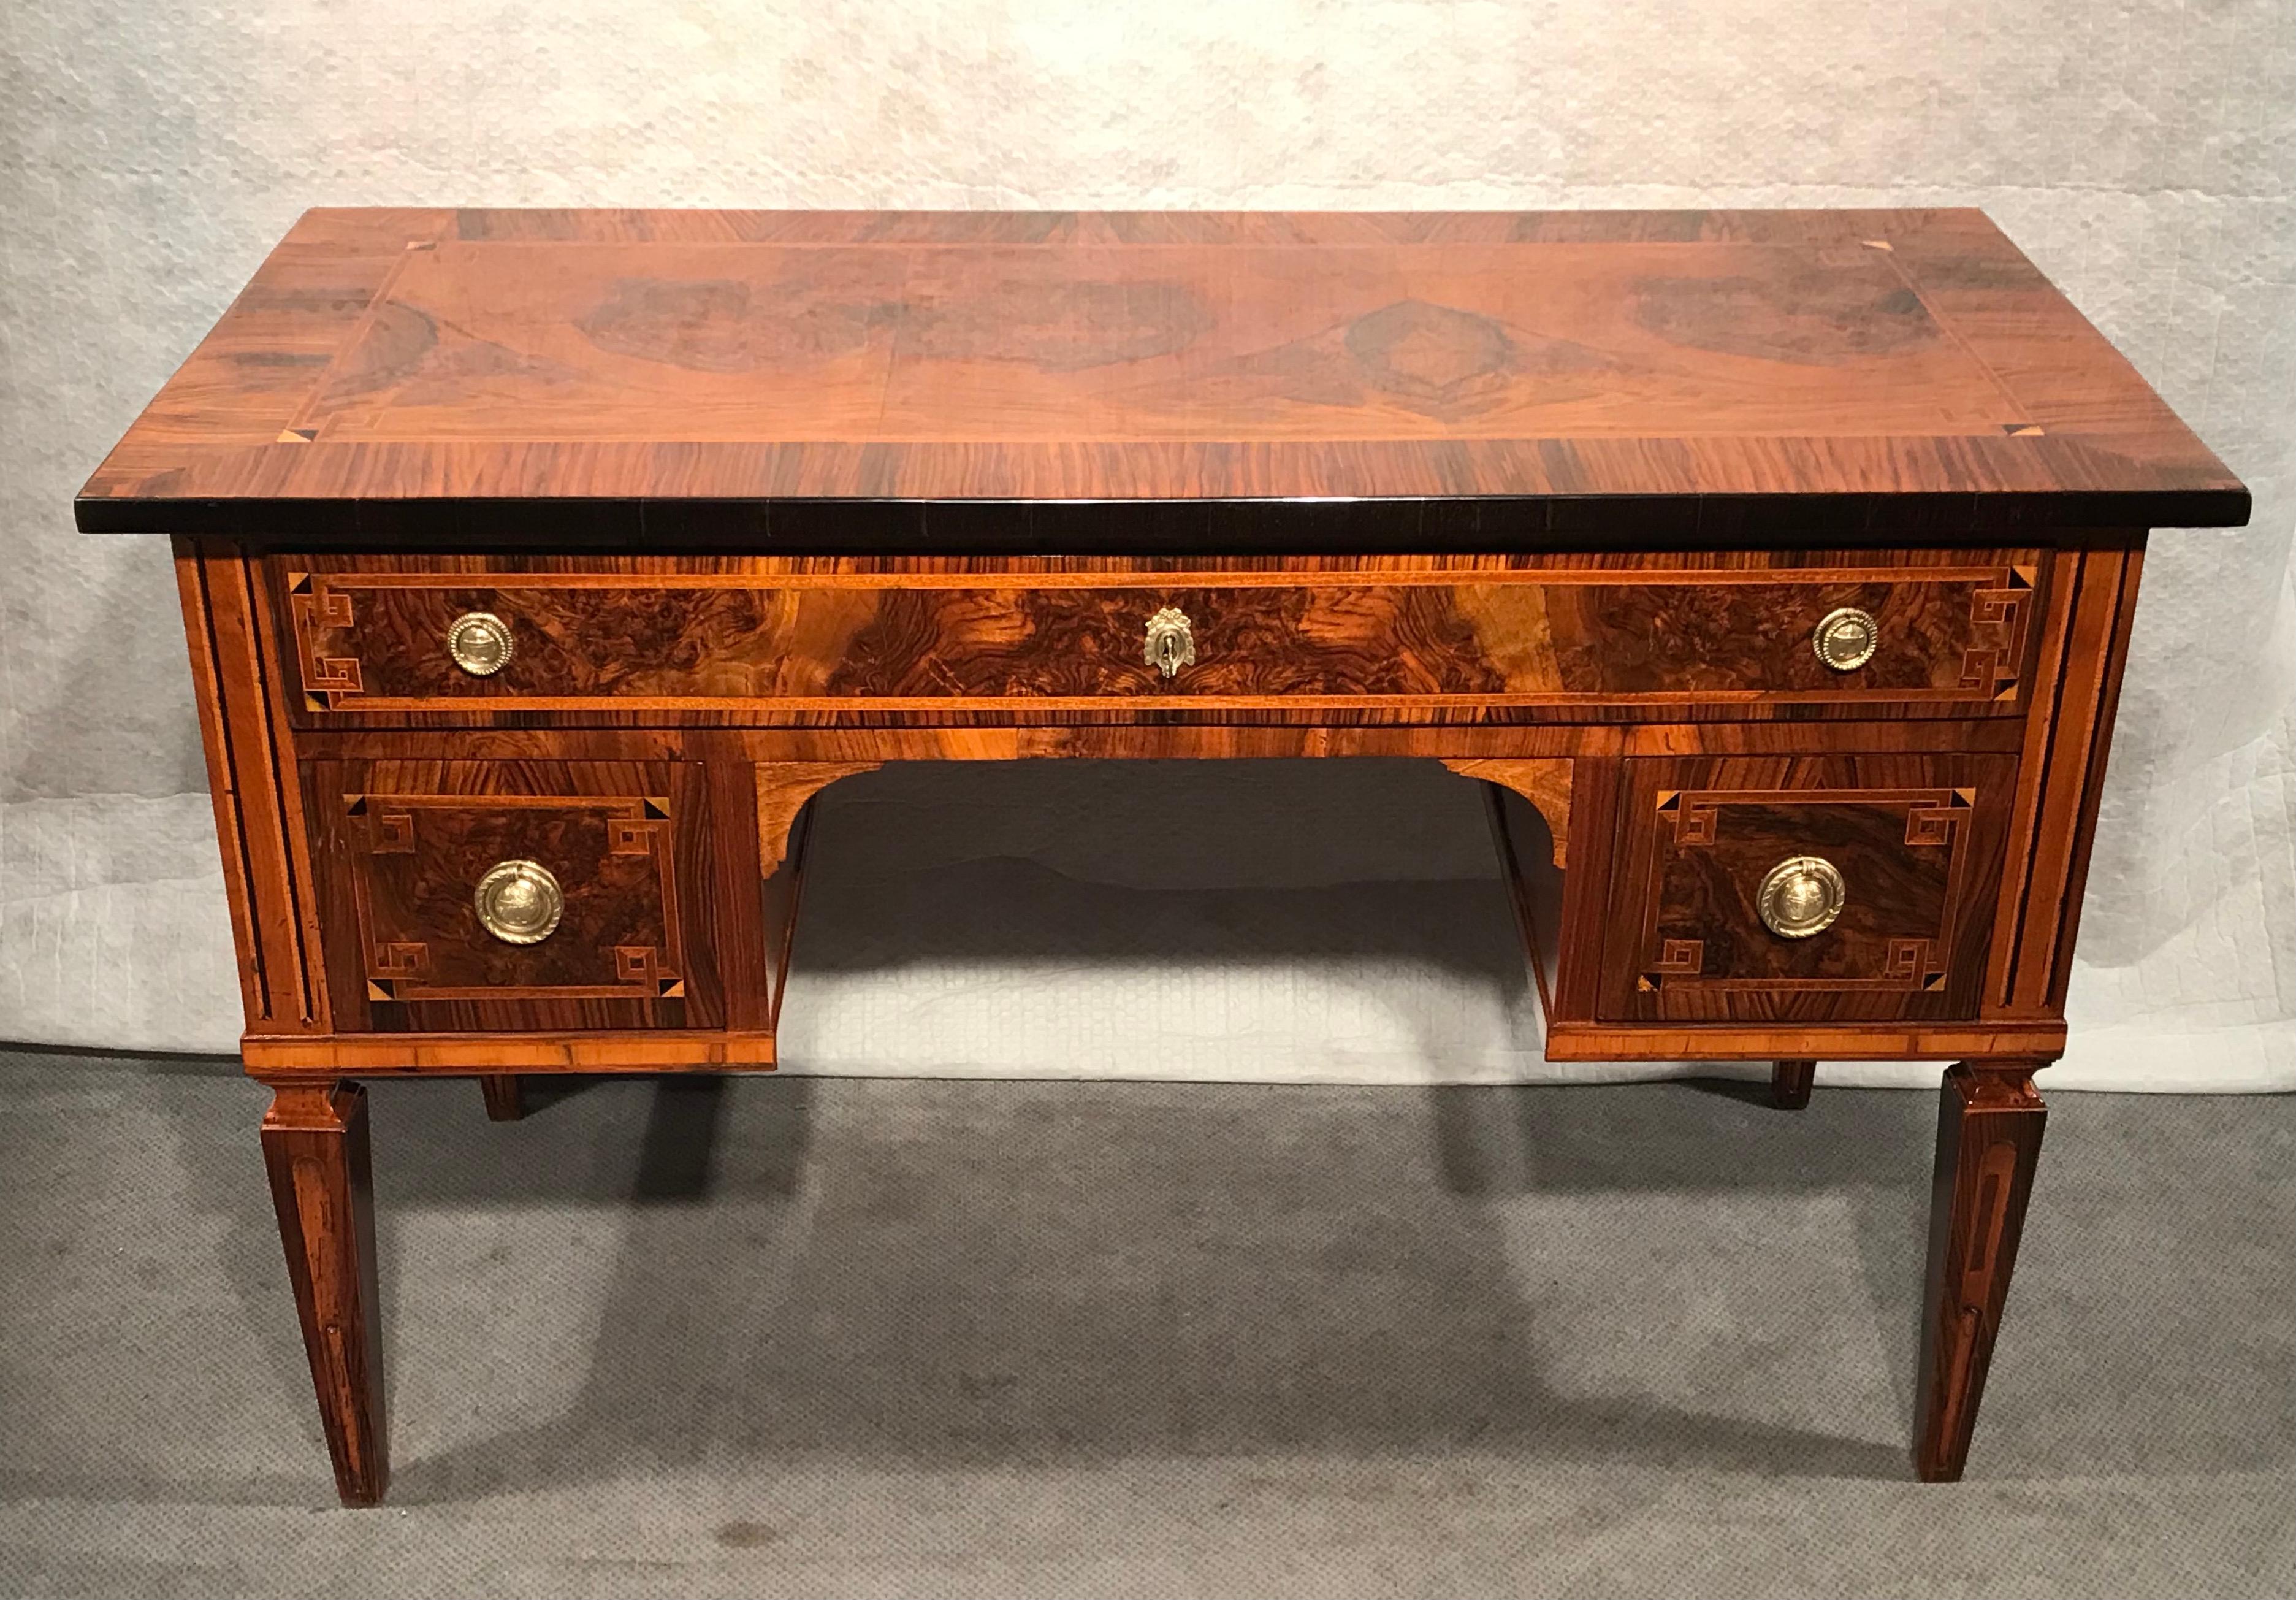 Dieser originale Louis XVI-Schreibtisch zeichnet sich durch sein schönes Nussbaumfurnier aus, das zusätzlich mit Intarsien verziert ist. Der Schreibtisch steht auf vier spitz zulaufenden Vierkantbeinen. Er hat drei Schubladen. Die Platte hat ein